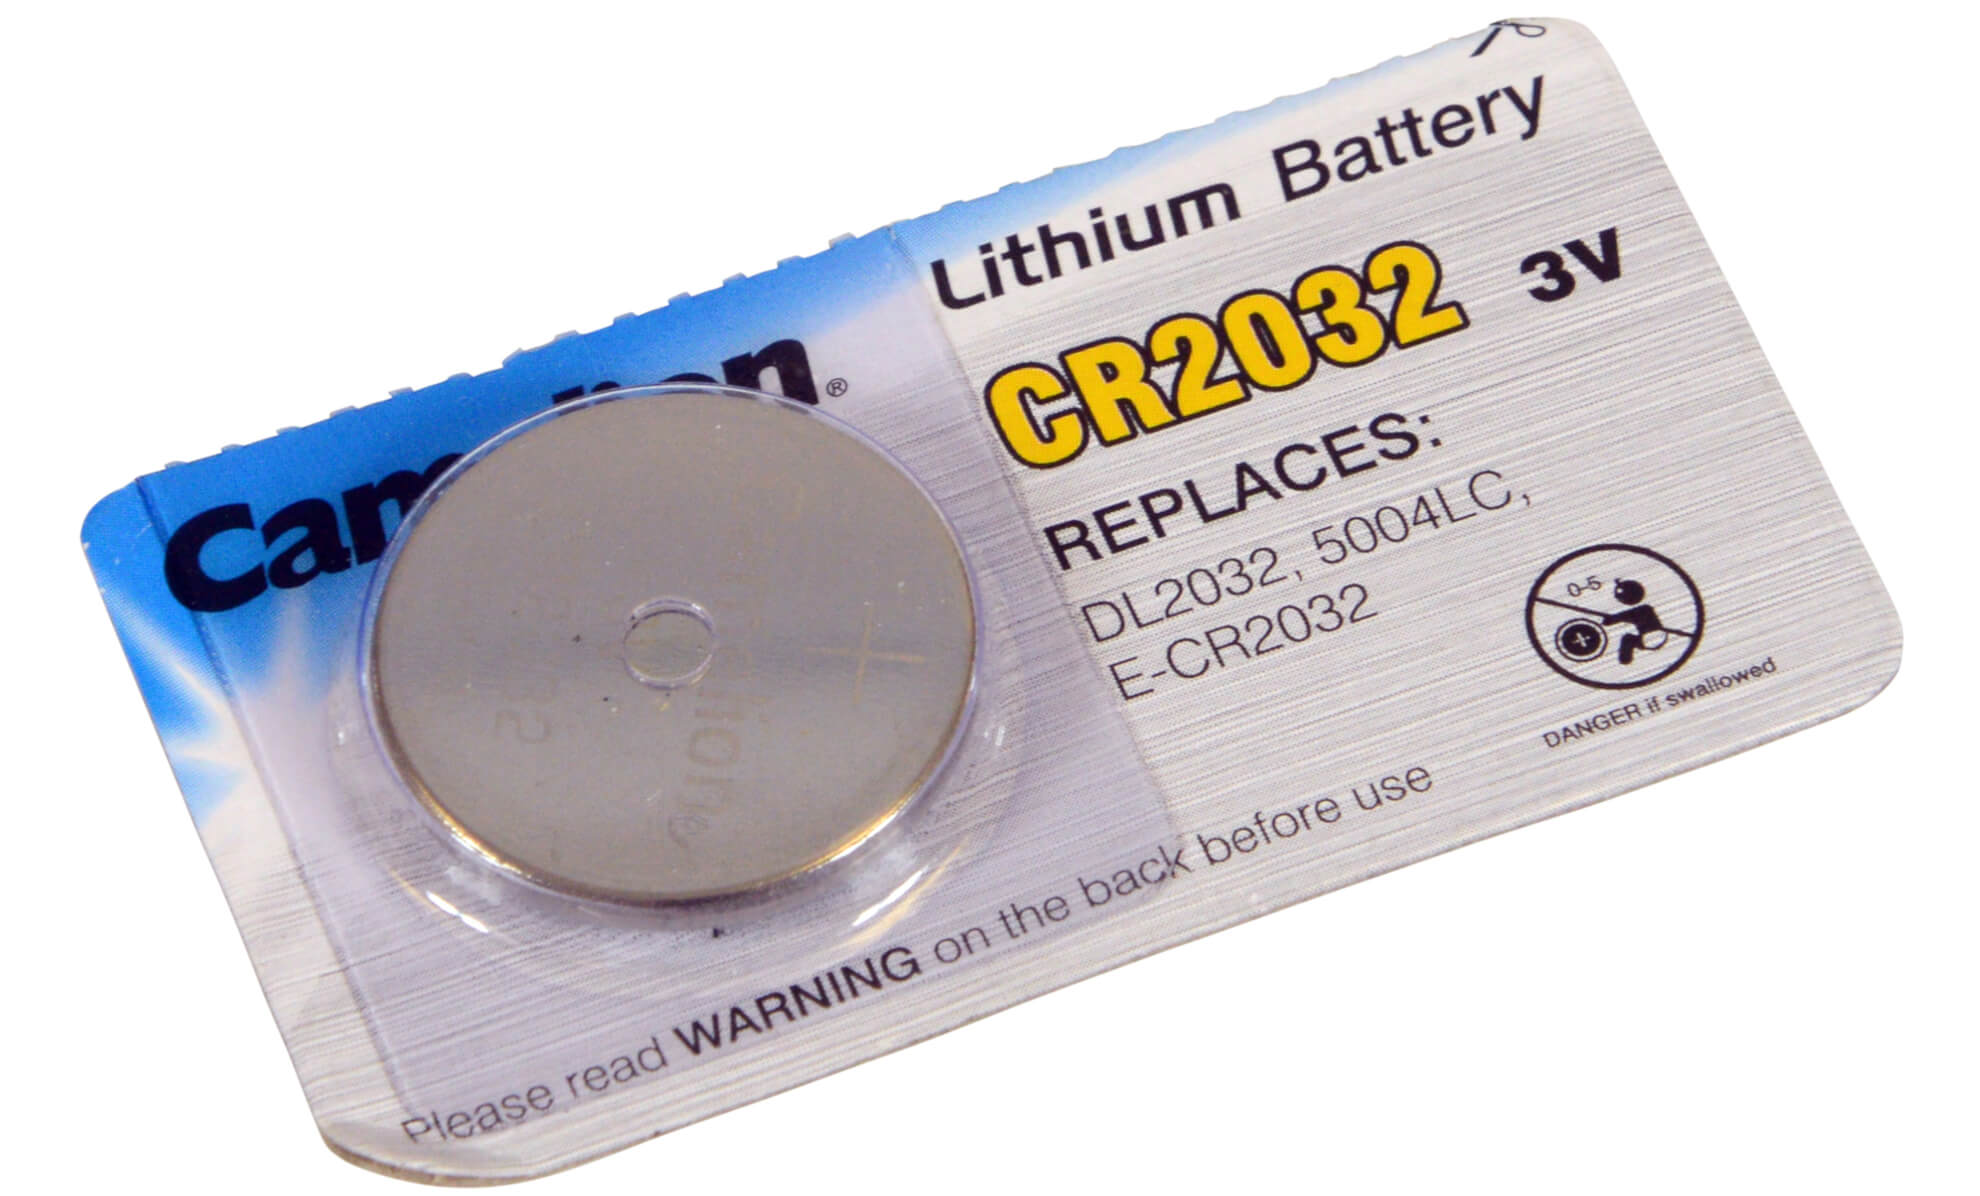 CR2032 3V Battery - For Garage Door Remote Controls